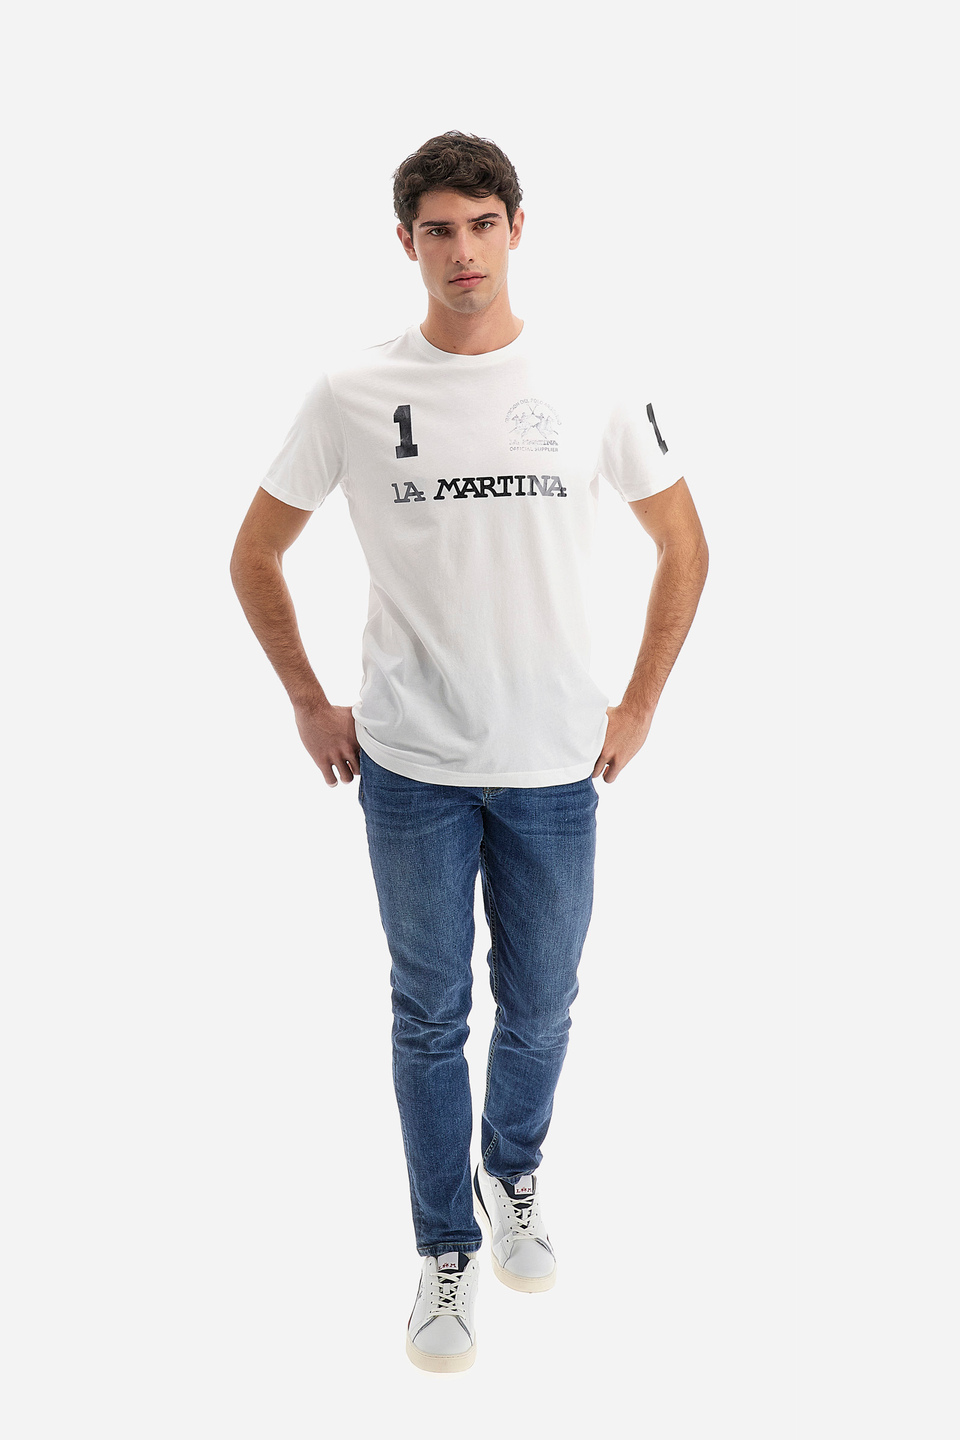 Herren-T-Shirt aus 100 % Baumwolle mit normaler Passform und kurzen Ärmeln - Reichard | La Martina - Official Online Shop